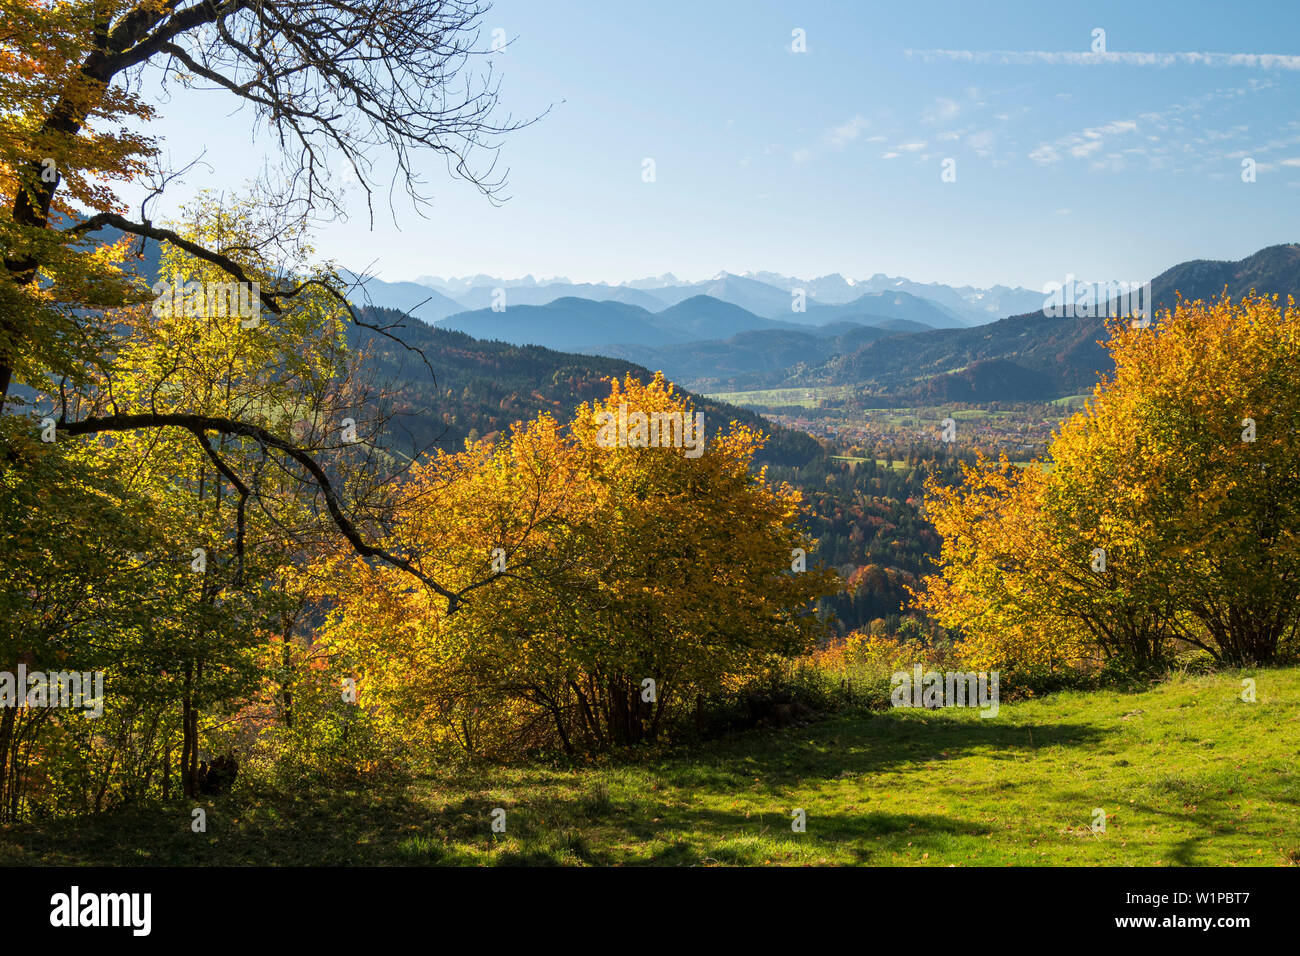 Vue depuis le versant sud de la montagne de la vallée de l'Isar dans Sonntratn, à Brauneck et de Karwendel, Alpes, Upper Bavaria, Germany, Europe Banque D'Images